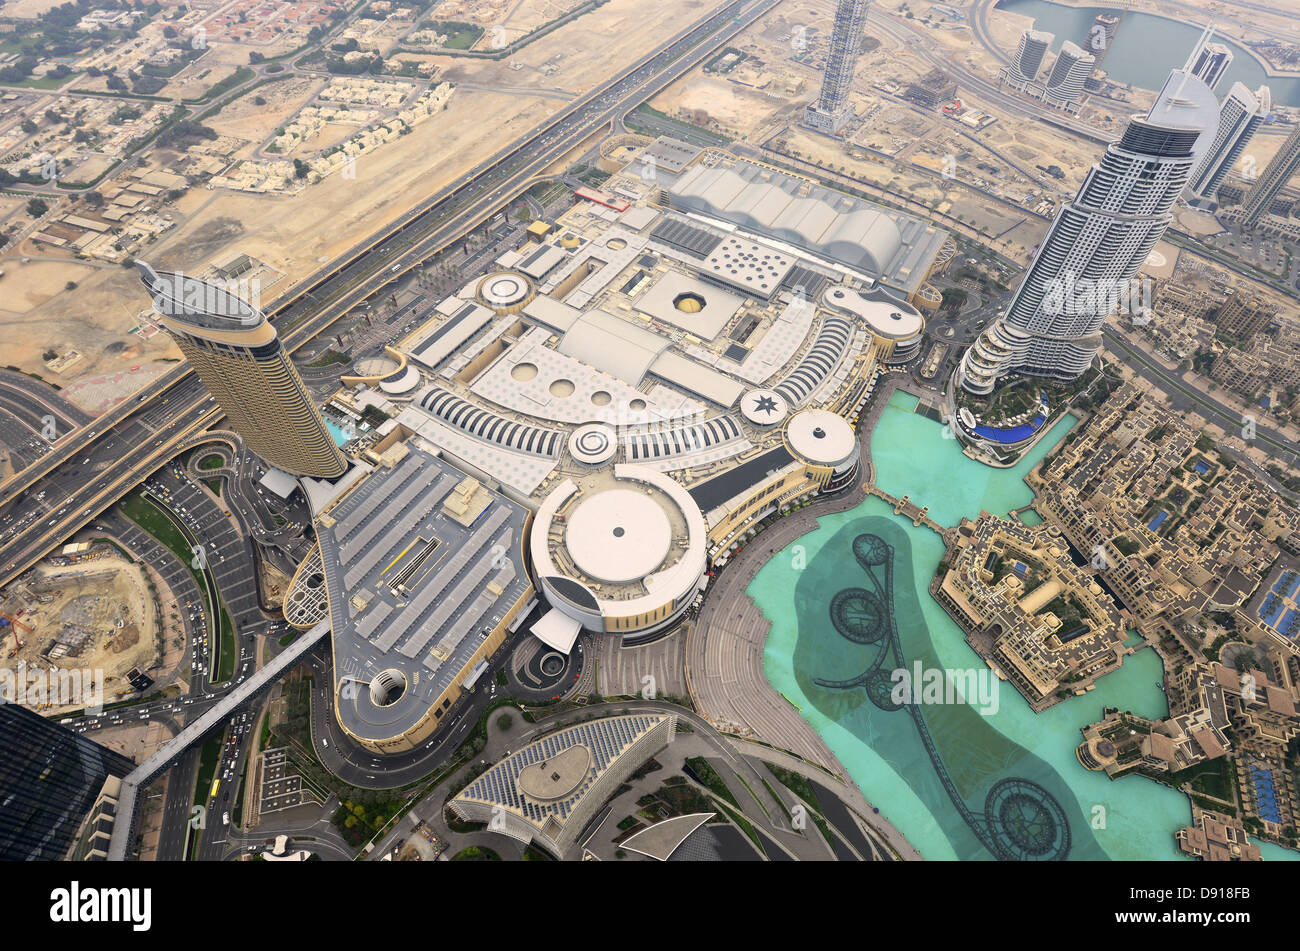 Dubai Mall-Luftbild von der Dubai Mall, weltweit größte Mall, Dubai, Vereinigte Arabische Emirate Stockfoto